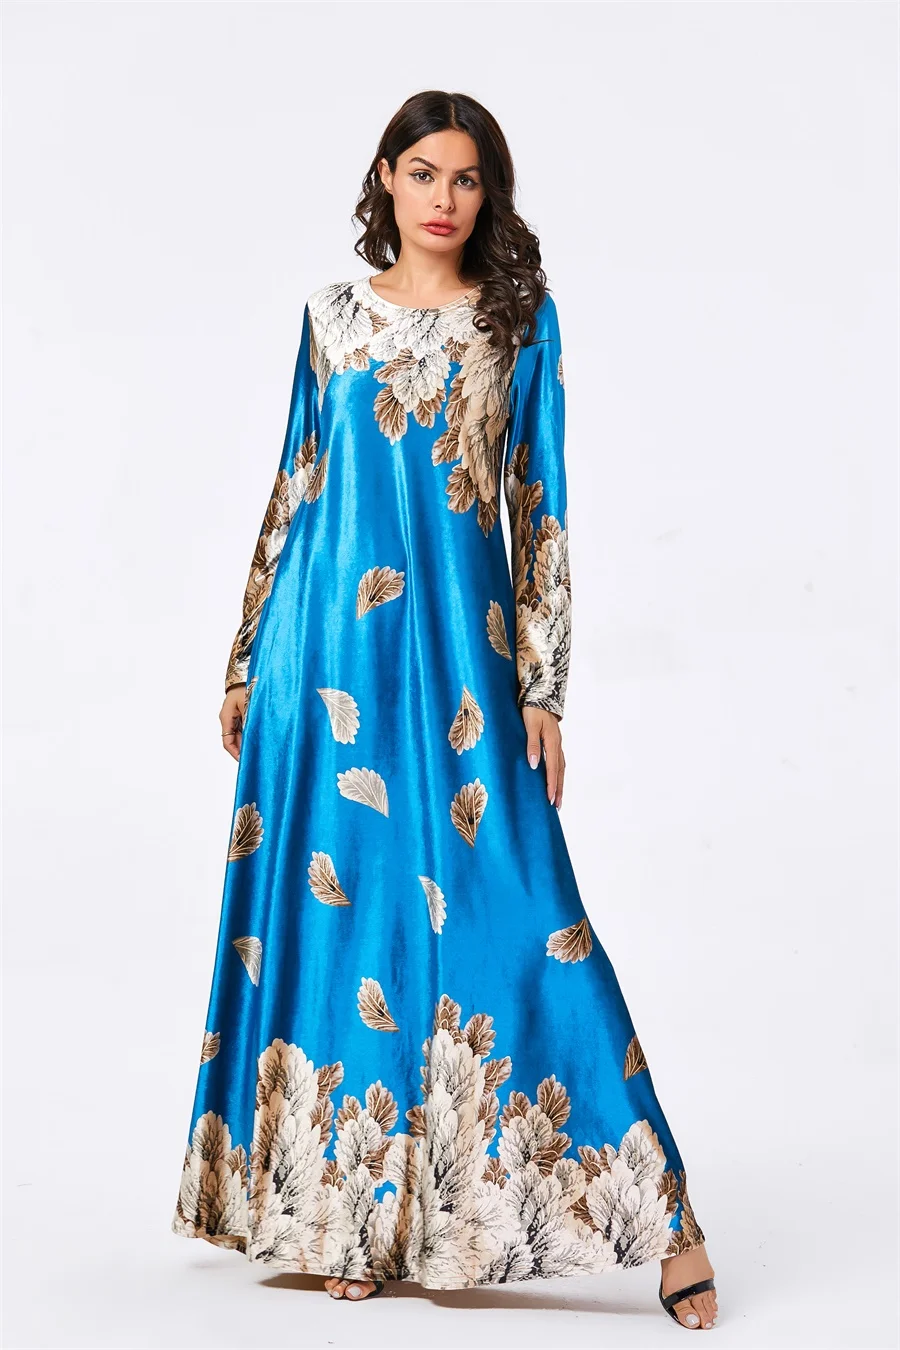 Siskakia бархатное платье женские Платья-макси с длинным рукавом элегантного размера плюс с принтом листьев осенняя одежда мусульманская Арабская одежда синий